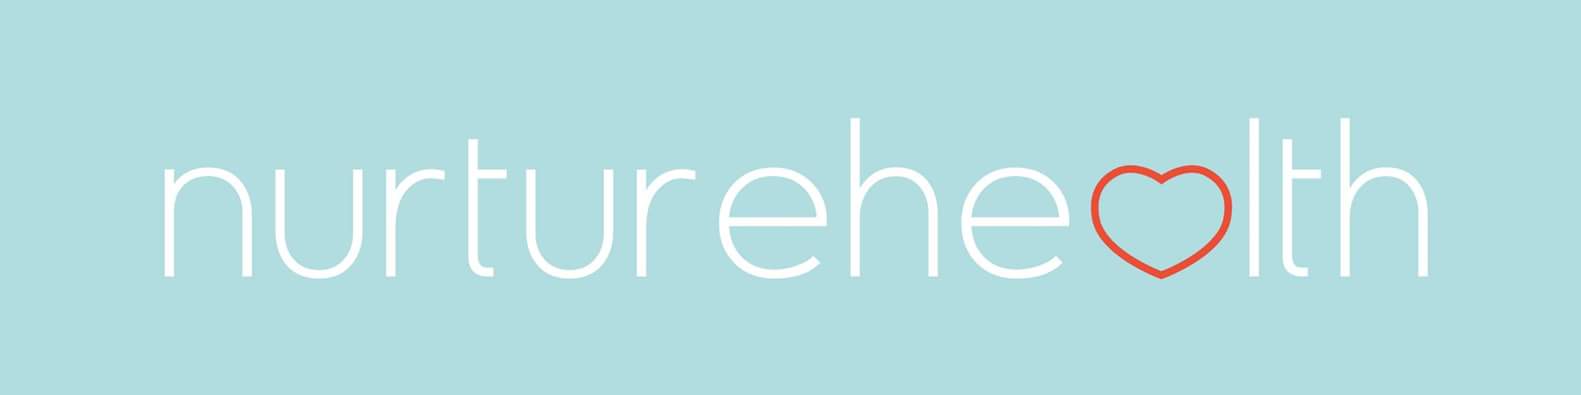 Nurture Health Logo